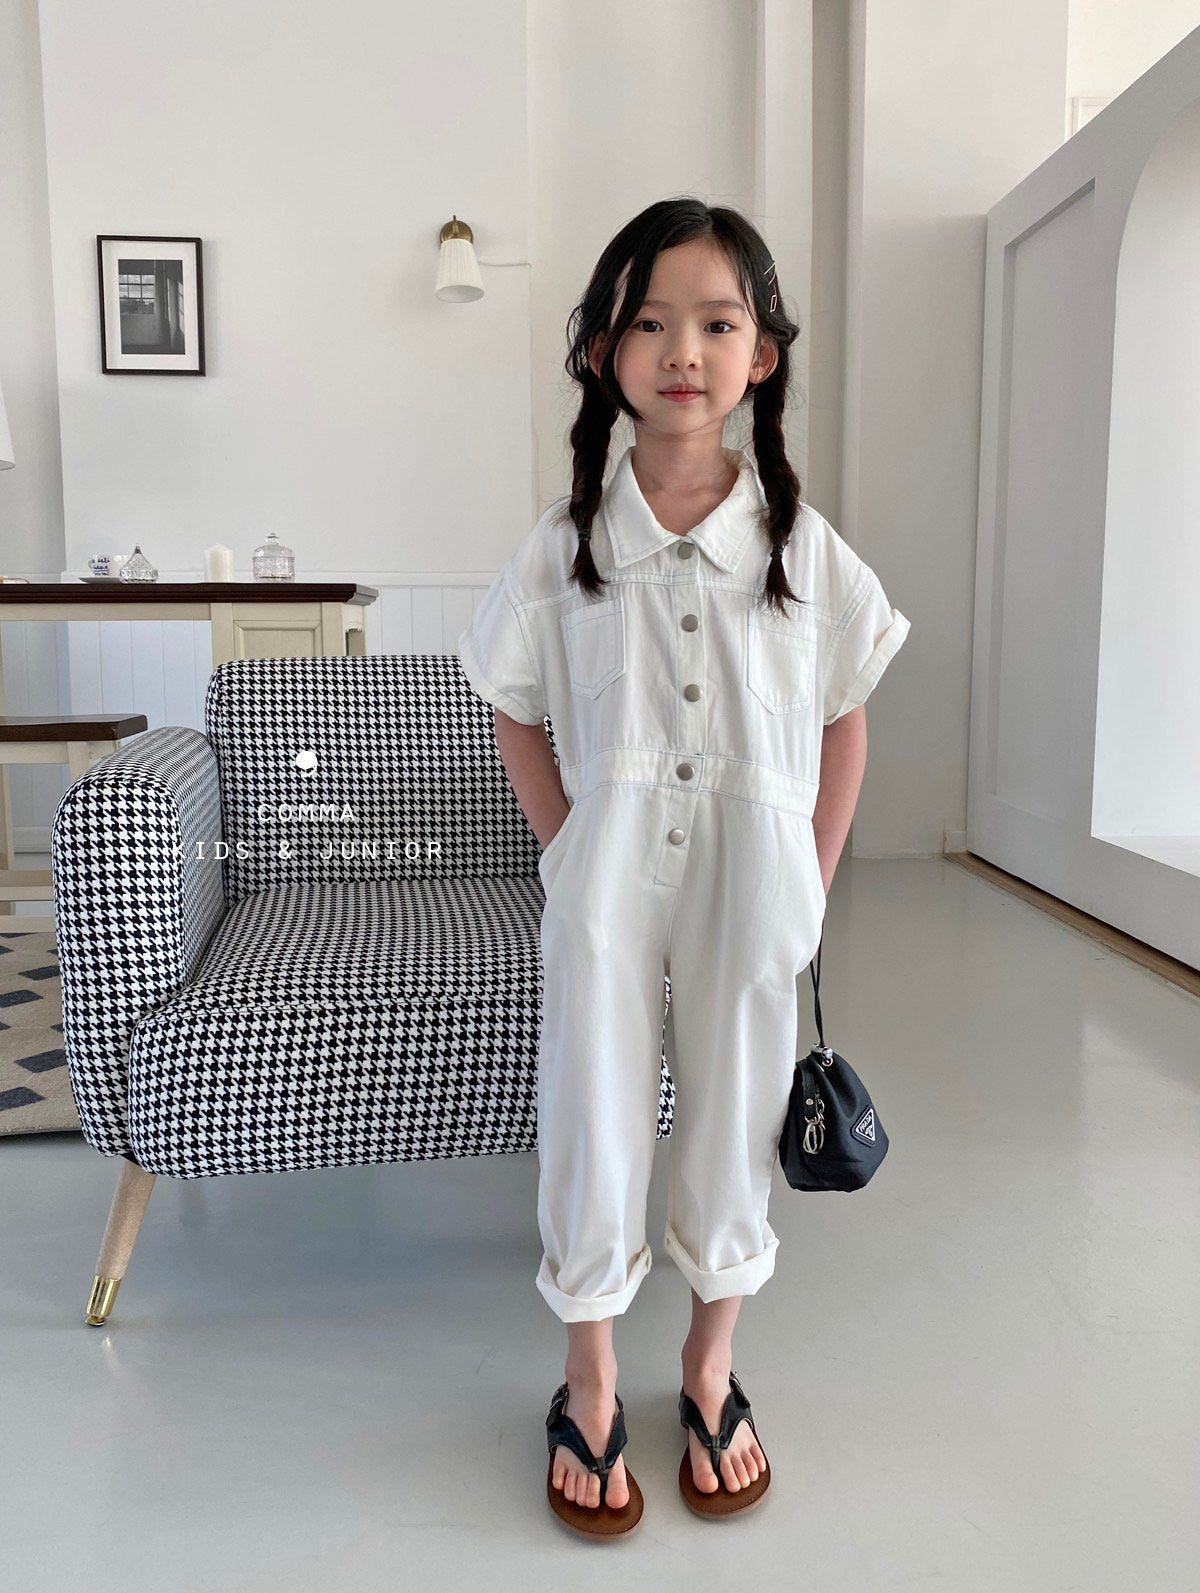 【注文後取り寄せ】韓国子供服 Comma 女の子 子供服  デニムジャンプスーツ 2色 90-150サイズズ